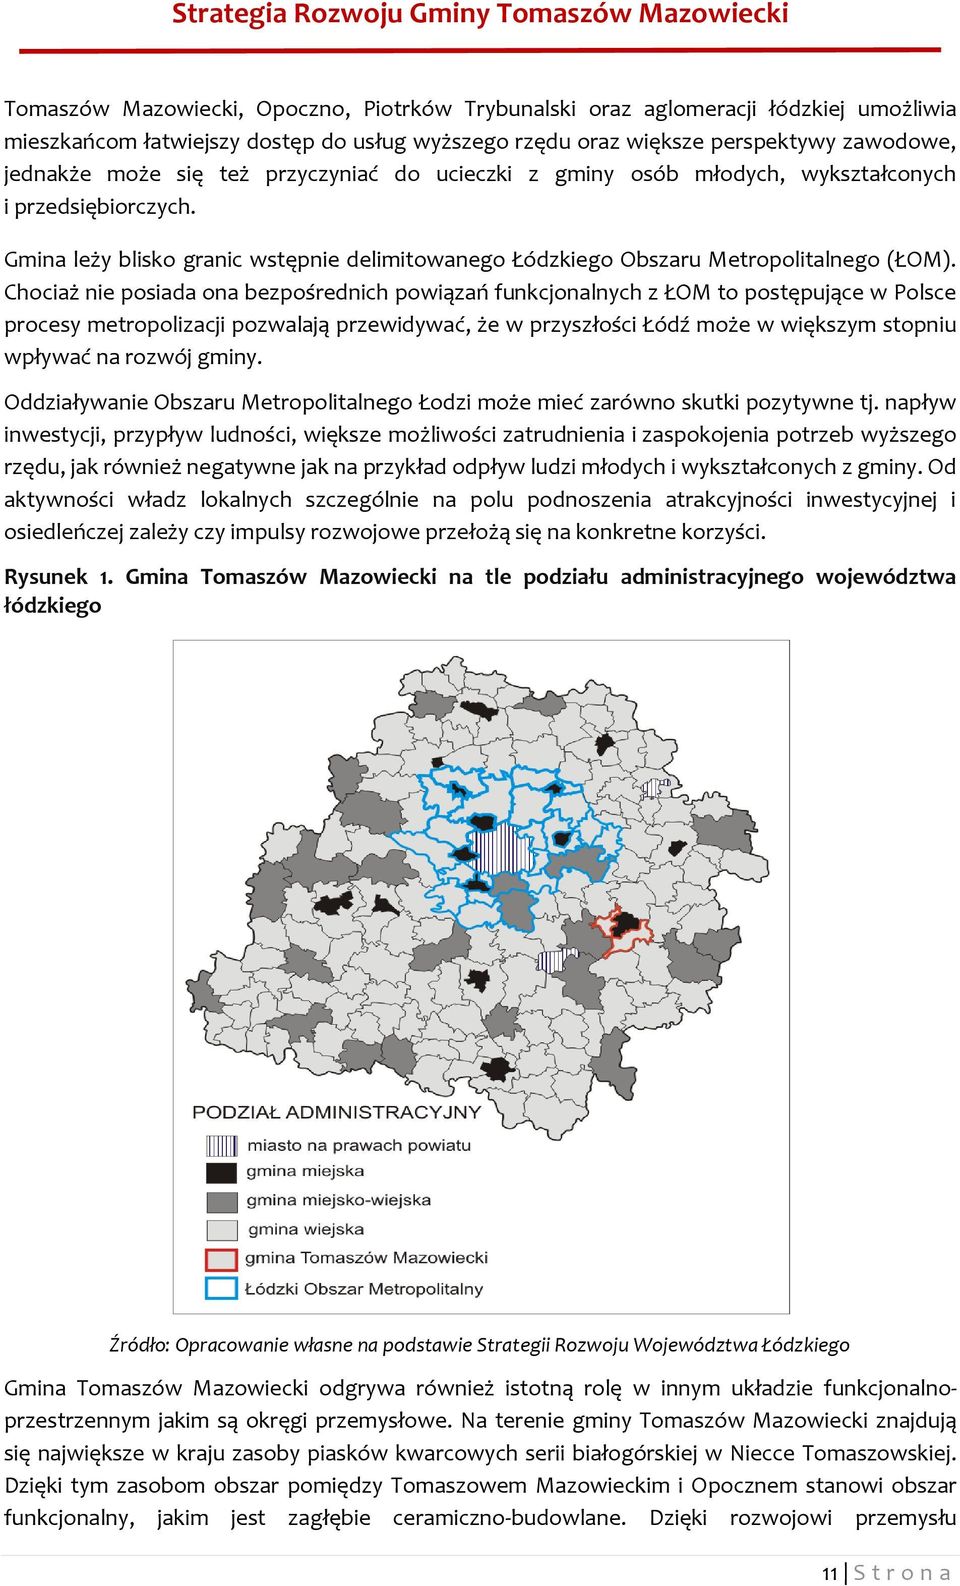 Chociaż nie posiada ona bezpośrednich powiązań funkcjonalnych z ŁOM to postępujące w Polsce procesy metropolizacji pozwalają przewidywać, że w przyszłości Łódź może w większym stopniu wpływać na